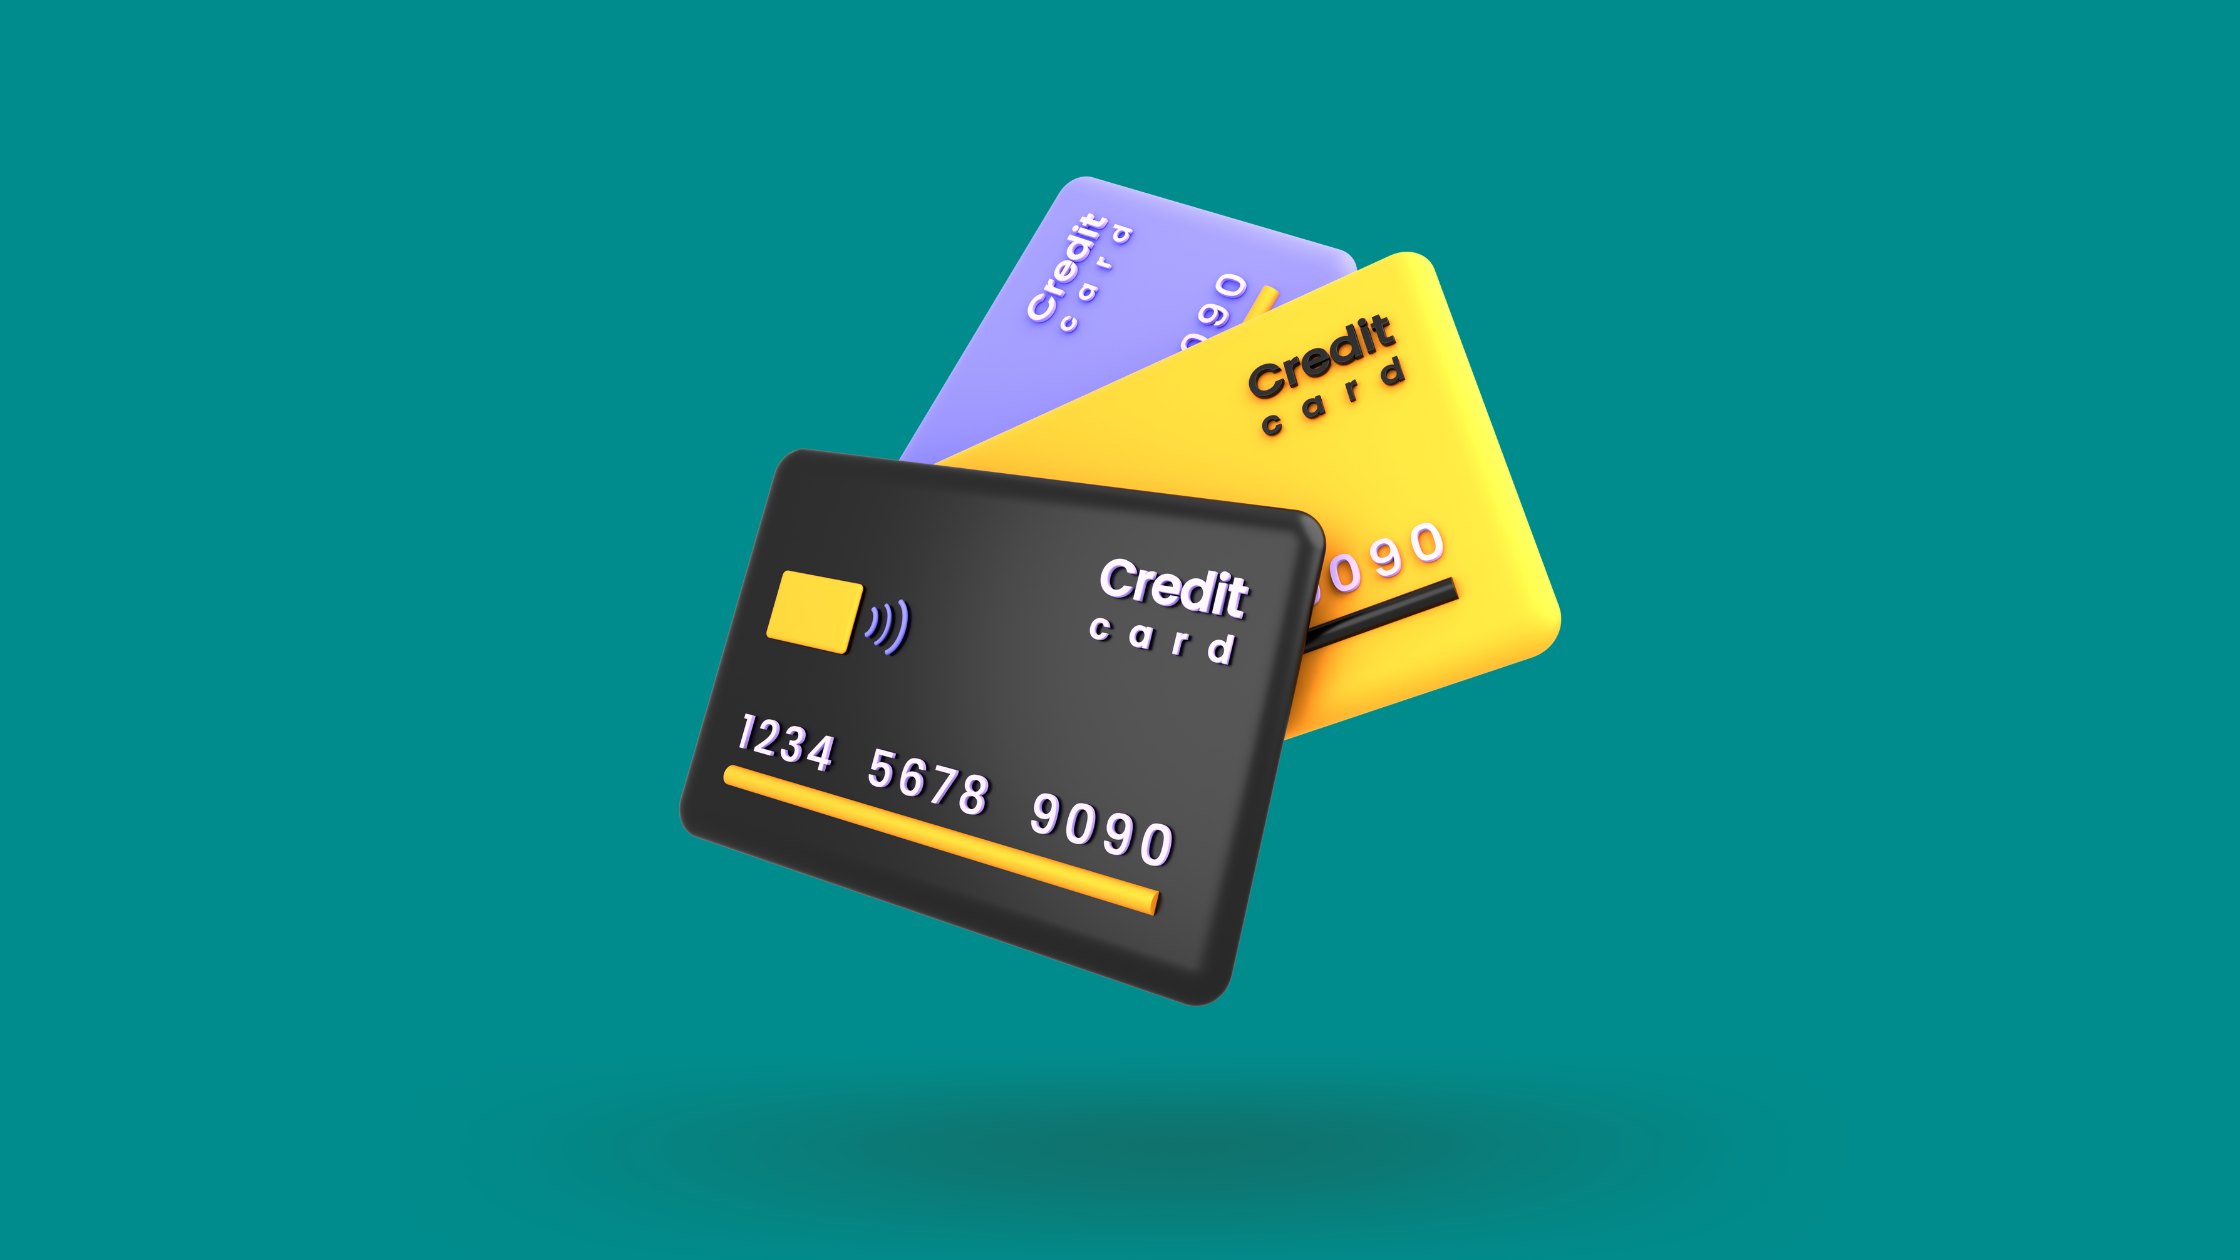 crypto.com credit card explained